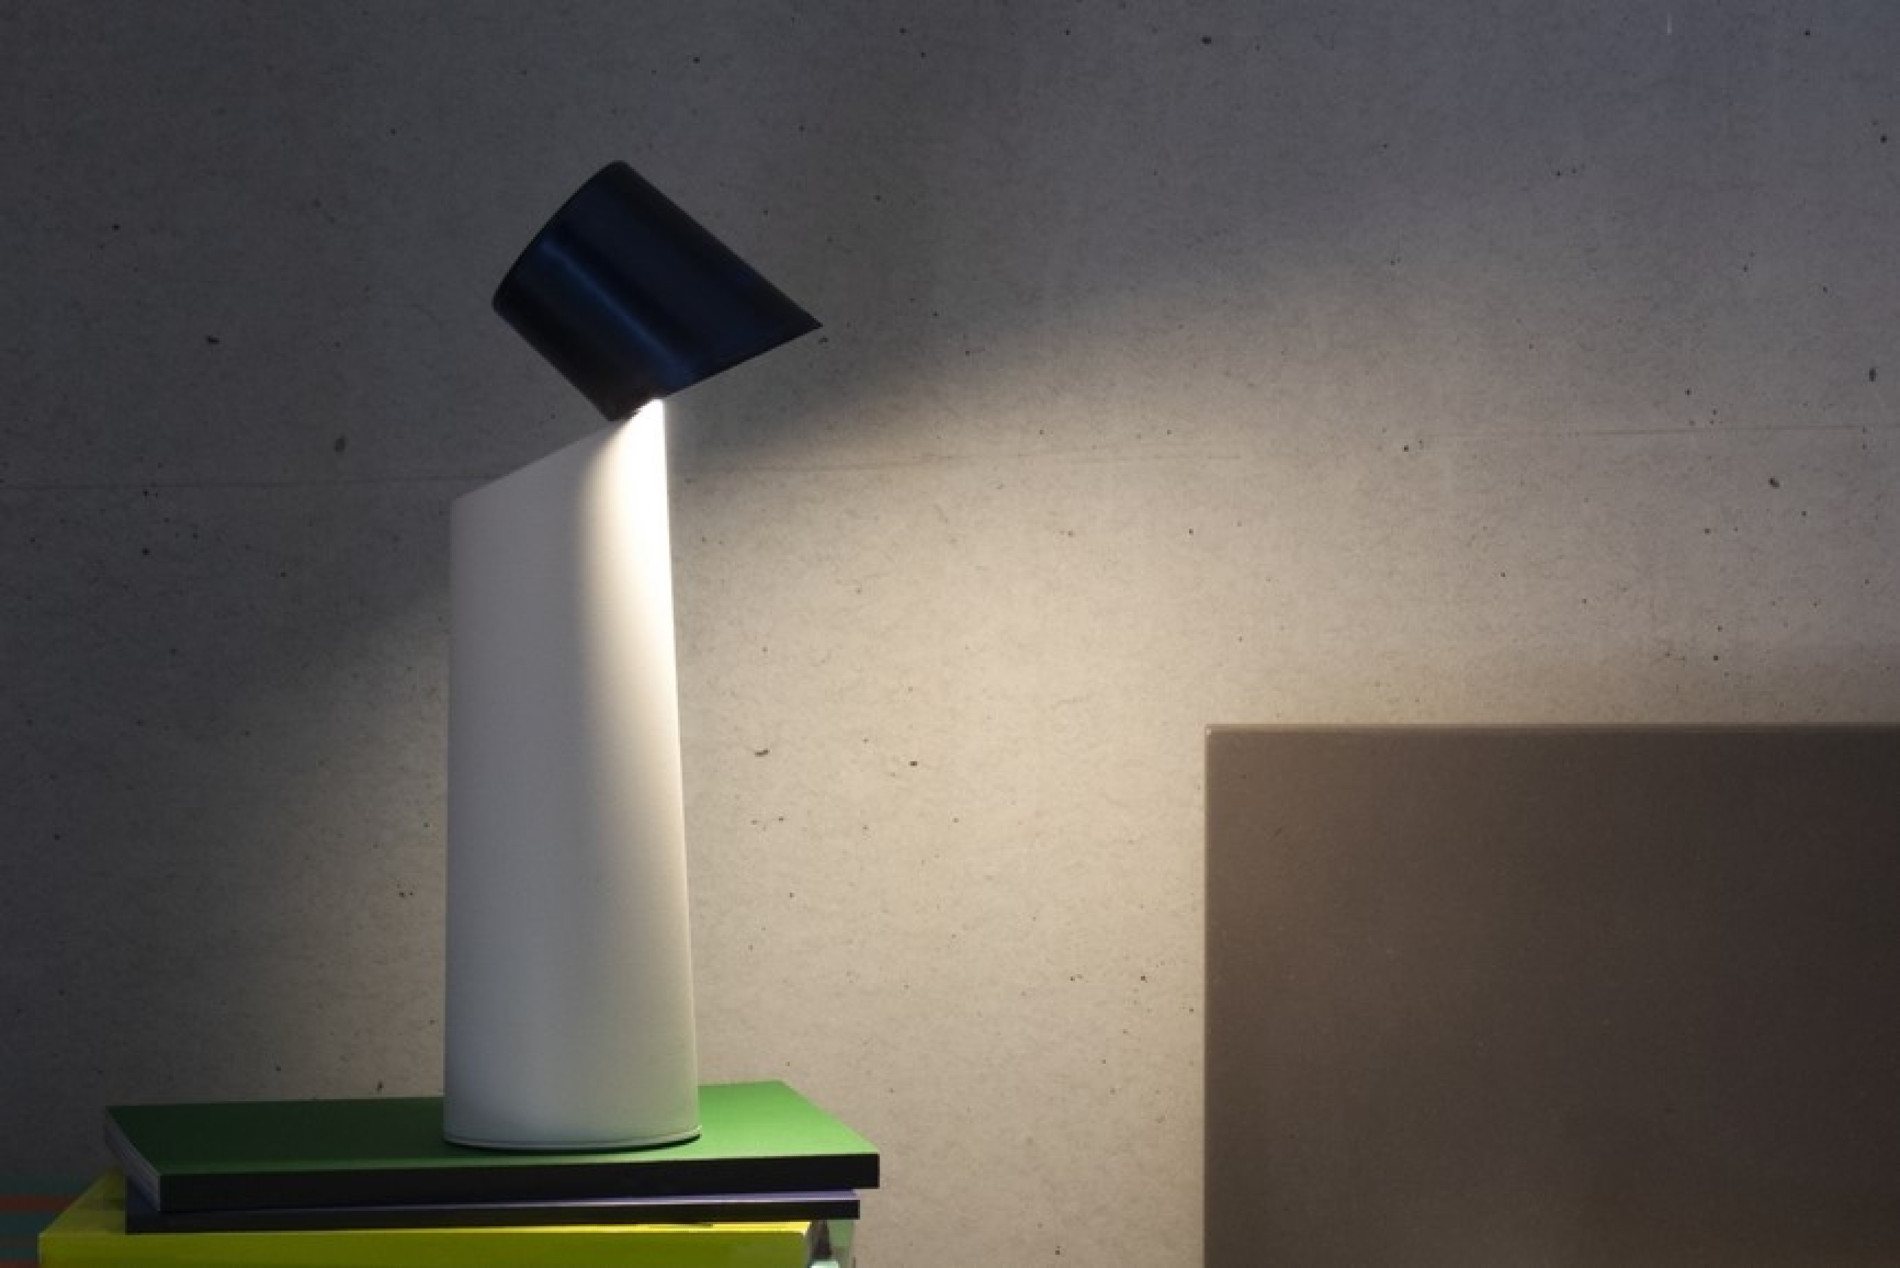 De eerste prijs gaat naar de Helia lamp van Stéfanie Kay: een minimalistische lamp met 